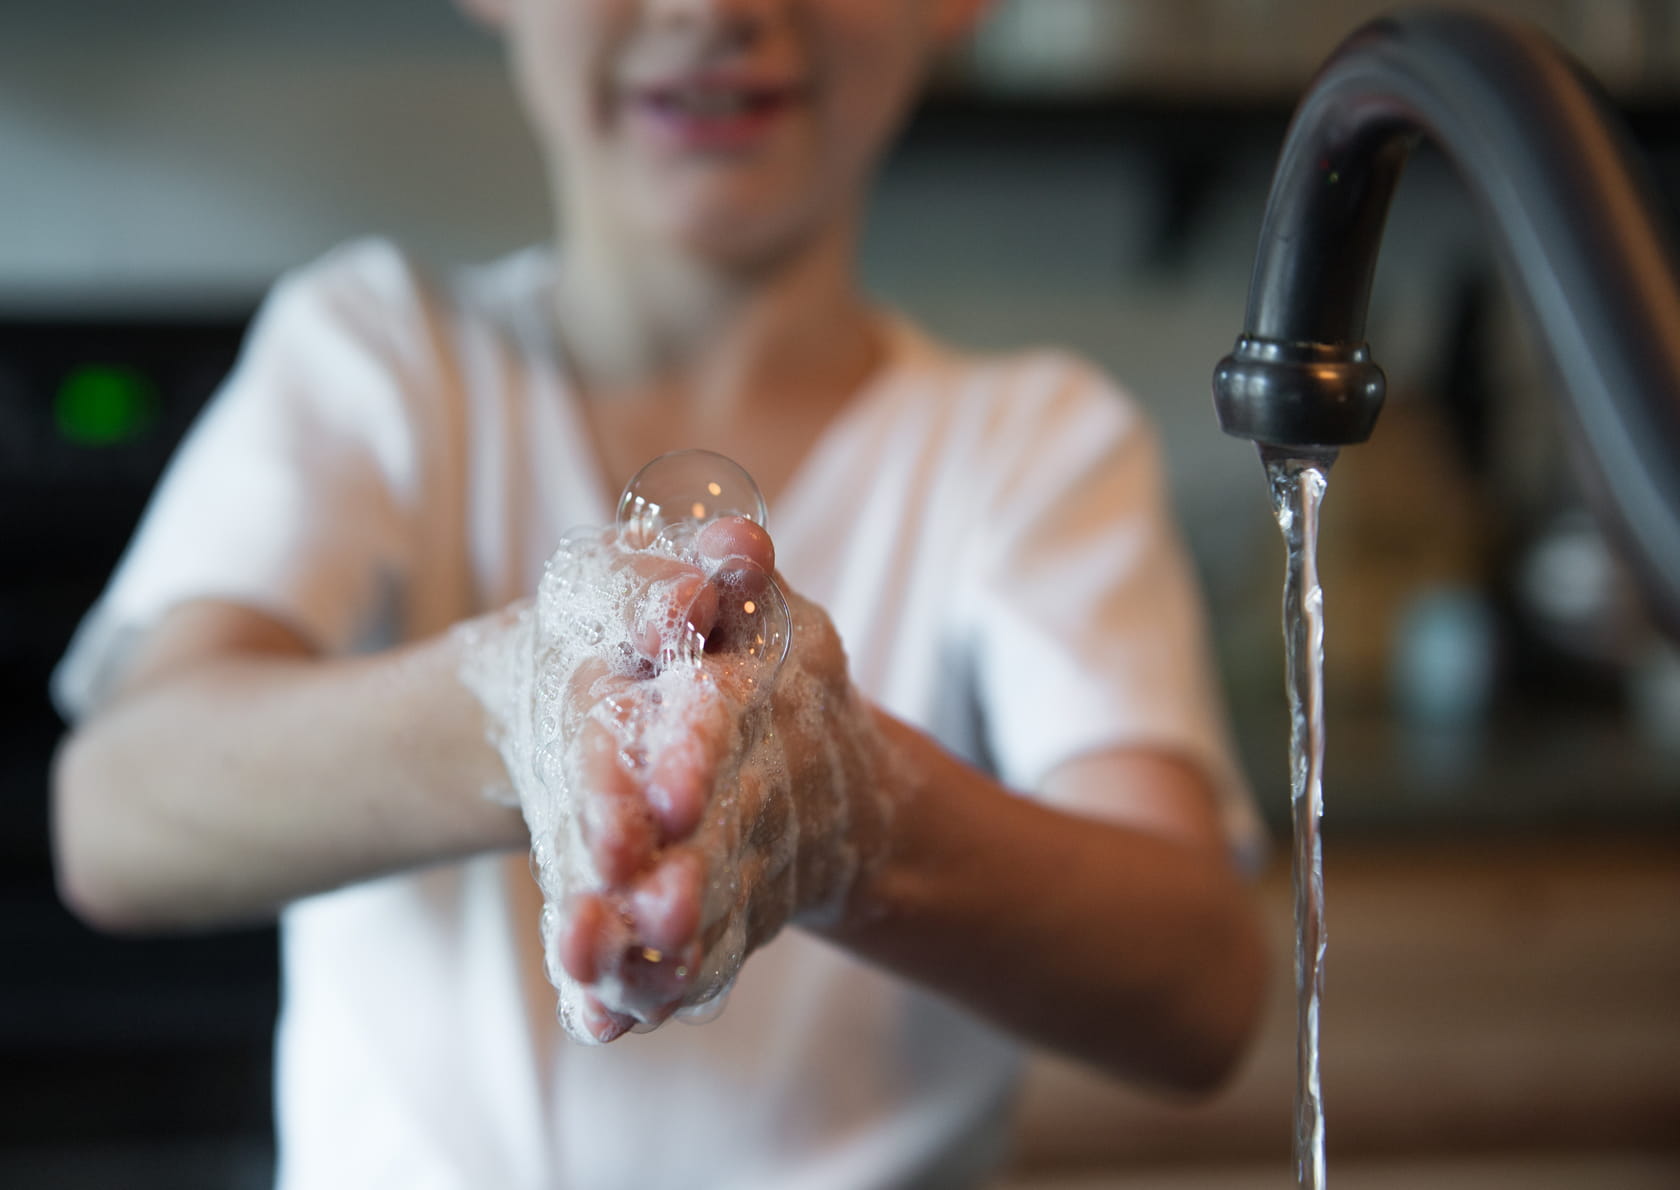 Boy washing sudsy hands